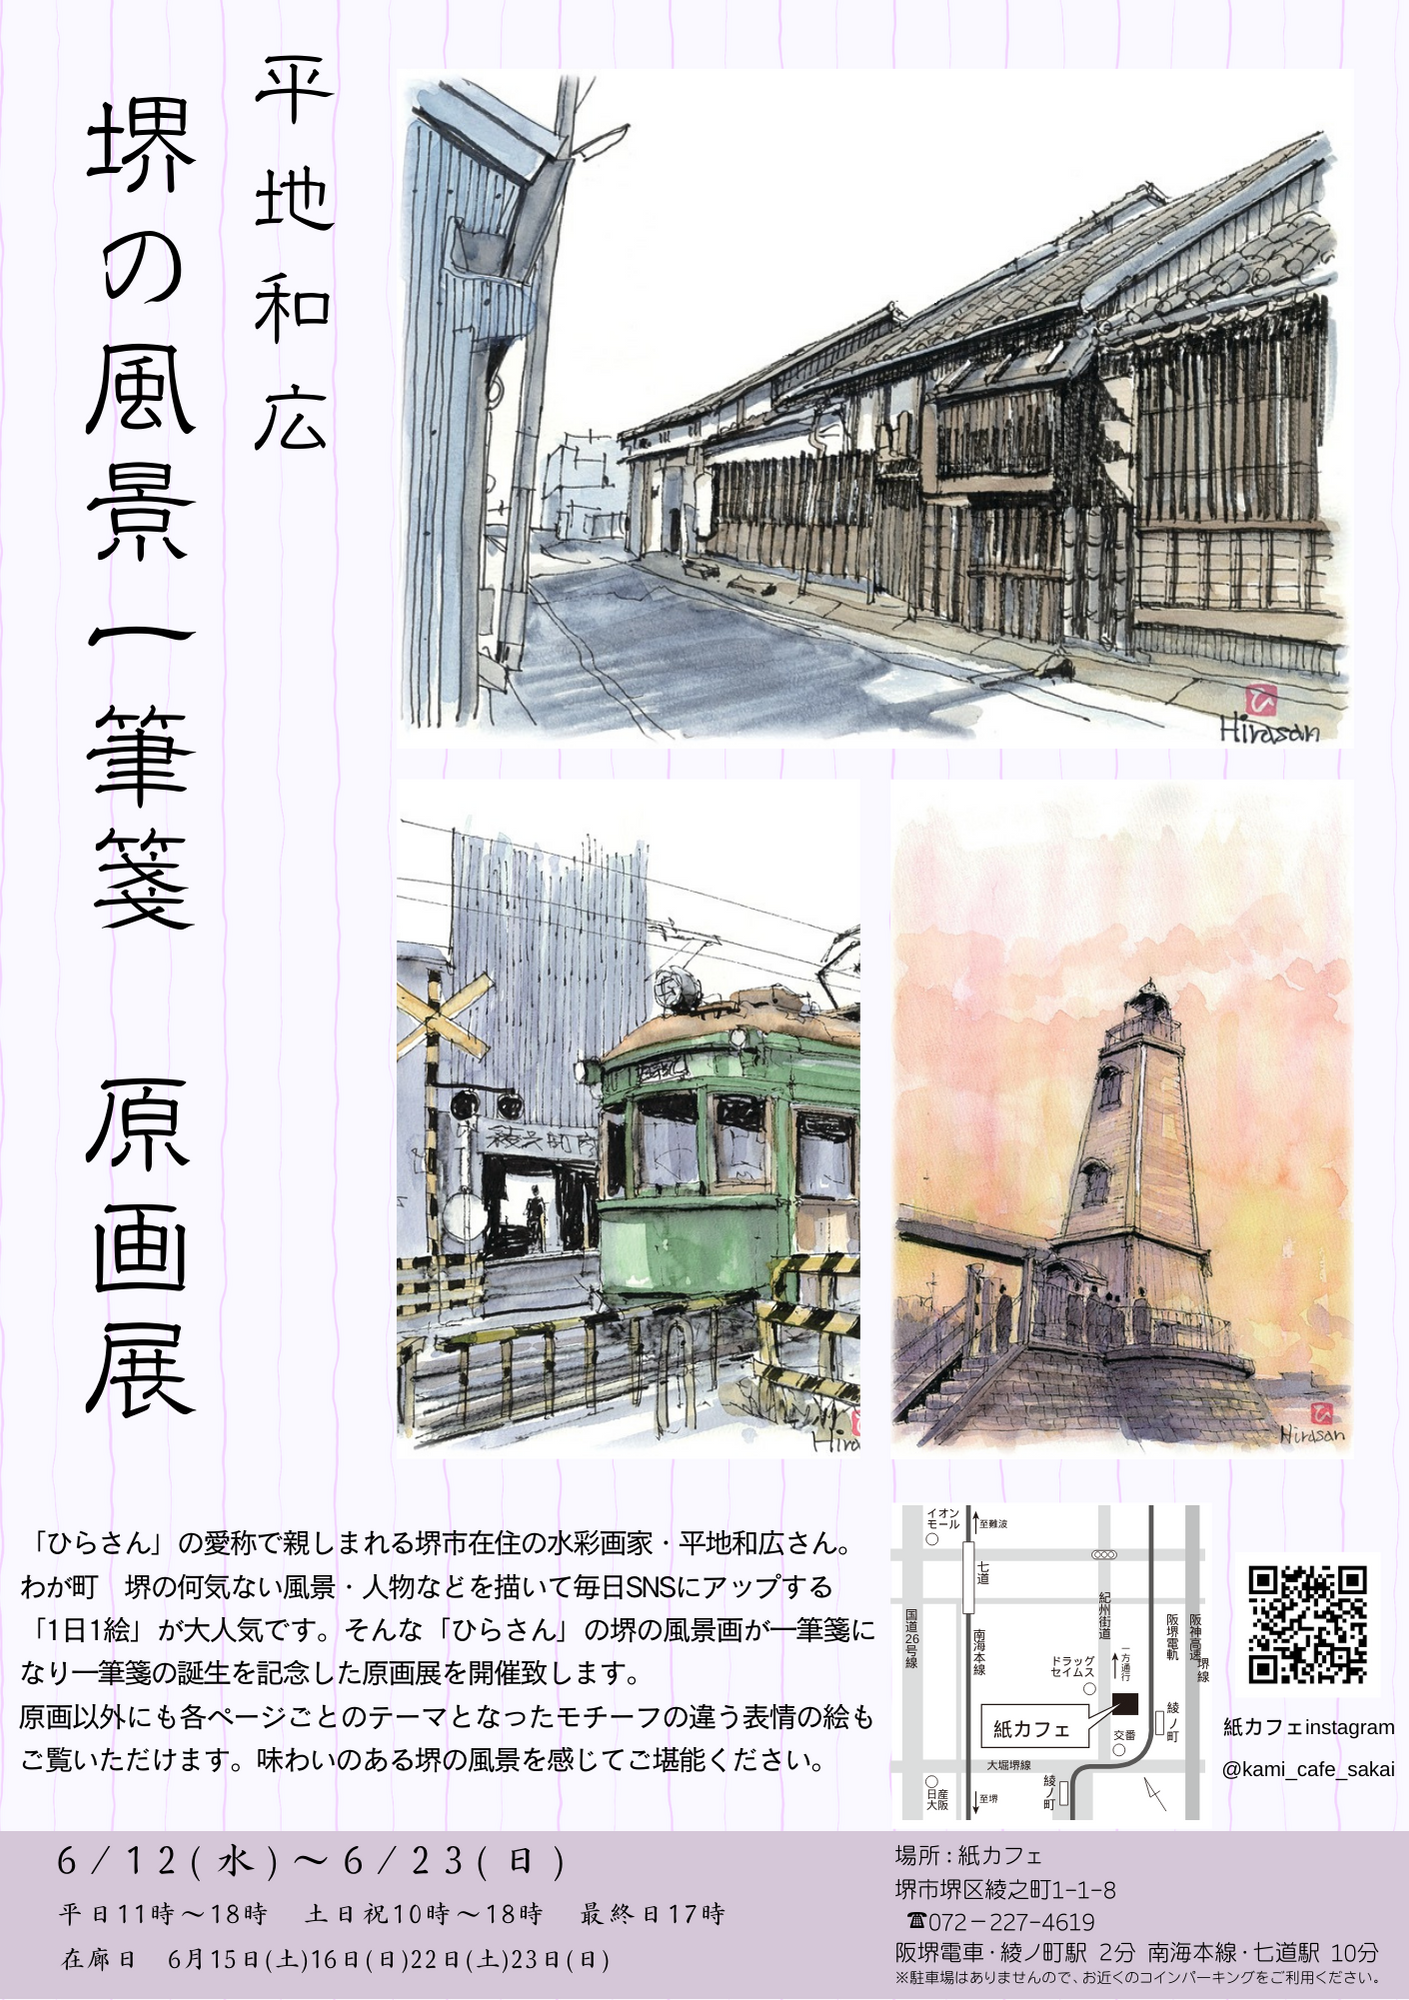 平地和広　堺の風景一筆箋の原画展開催します。